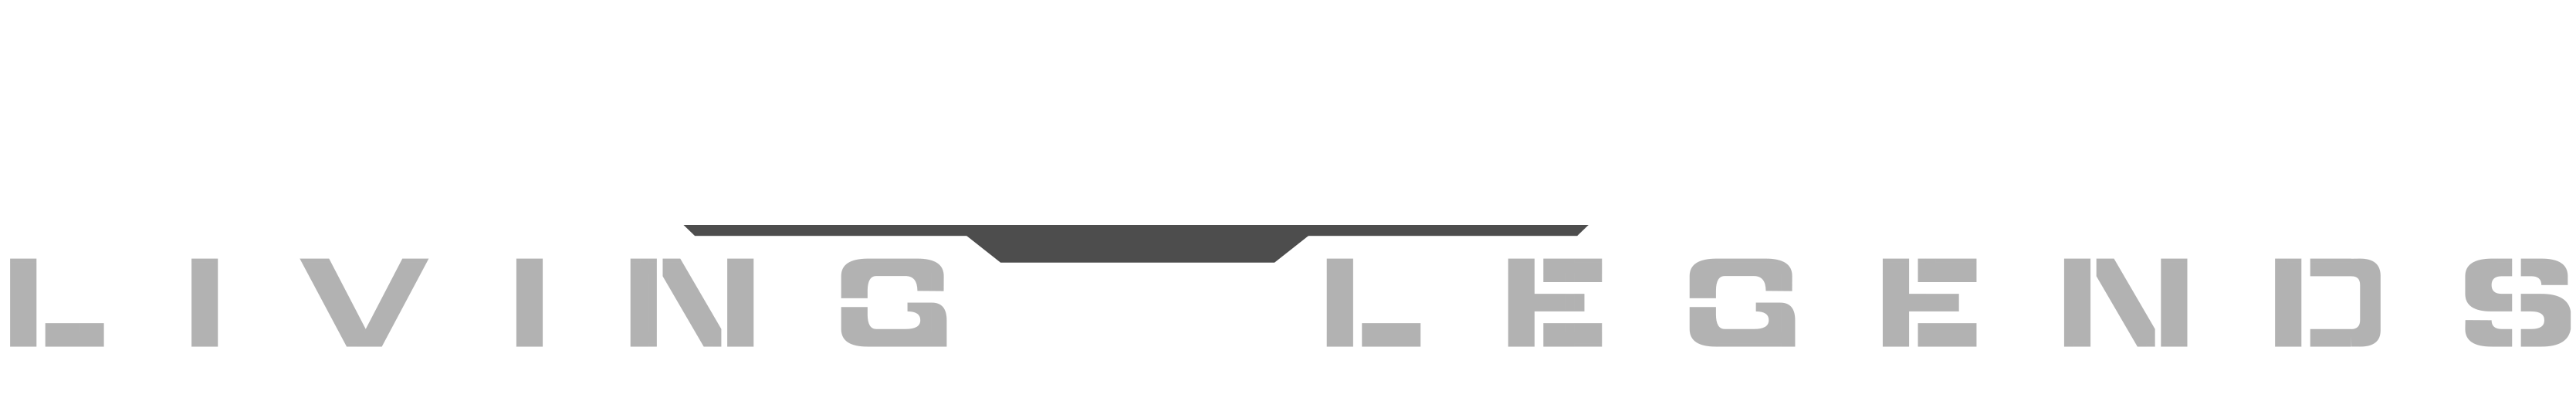 Logo MWLL.png